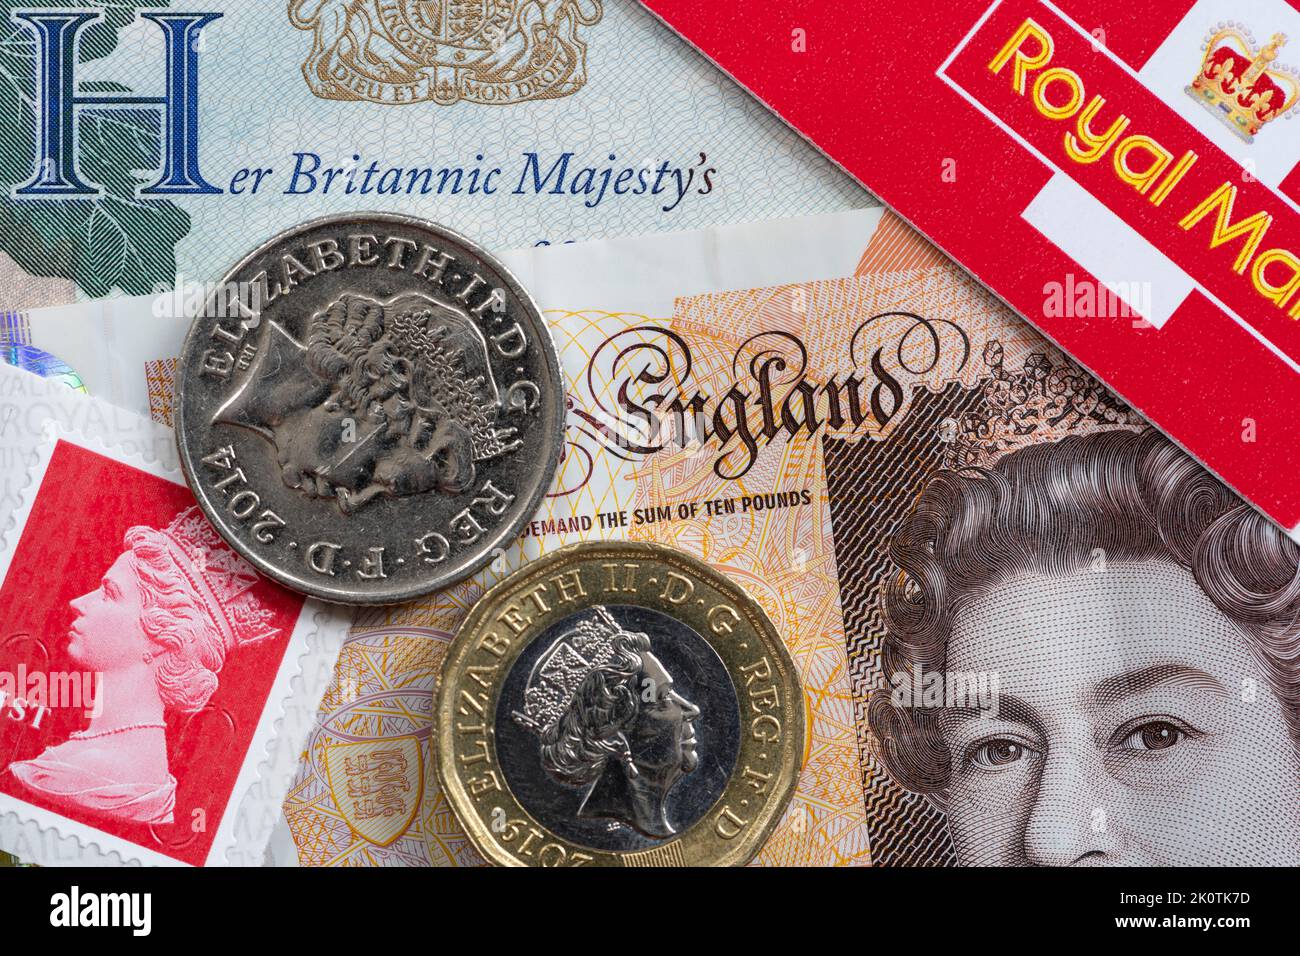 La rimozione del nome e dell'immagine della regina Elisabetta II dalla vita pubblica richiederà un po' di tempo: Pagina del passaporto, francobolli e monete che portano l'iconografia della regina Foto Stock